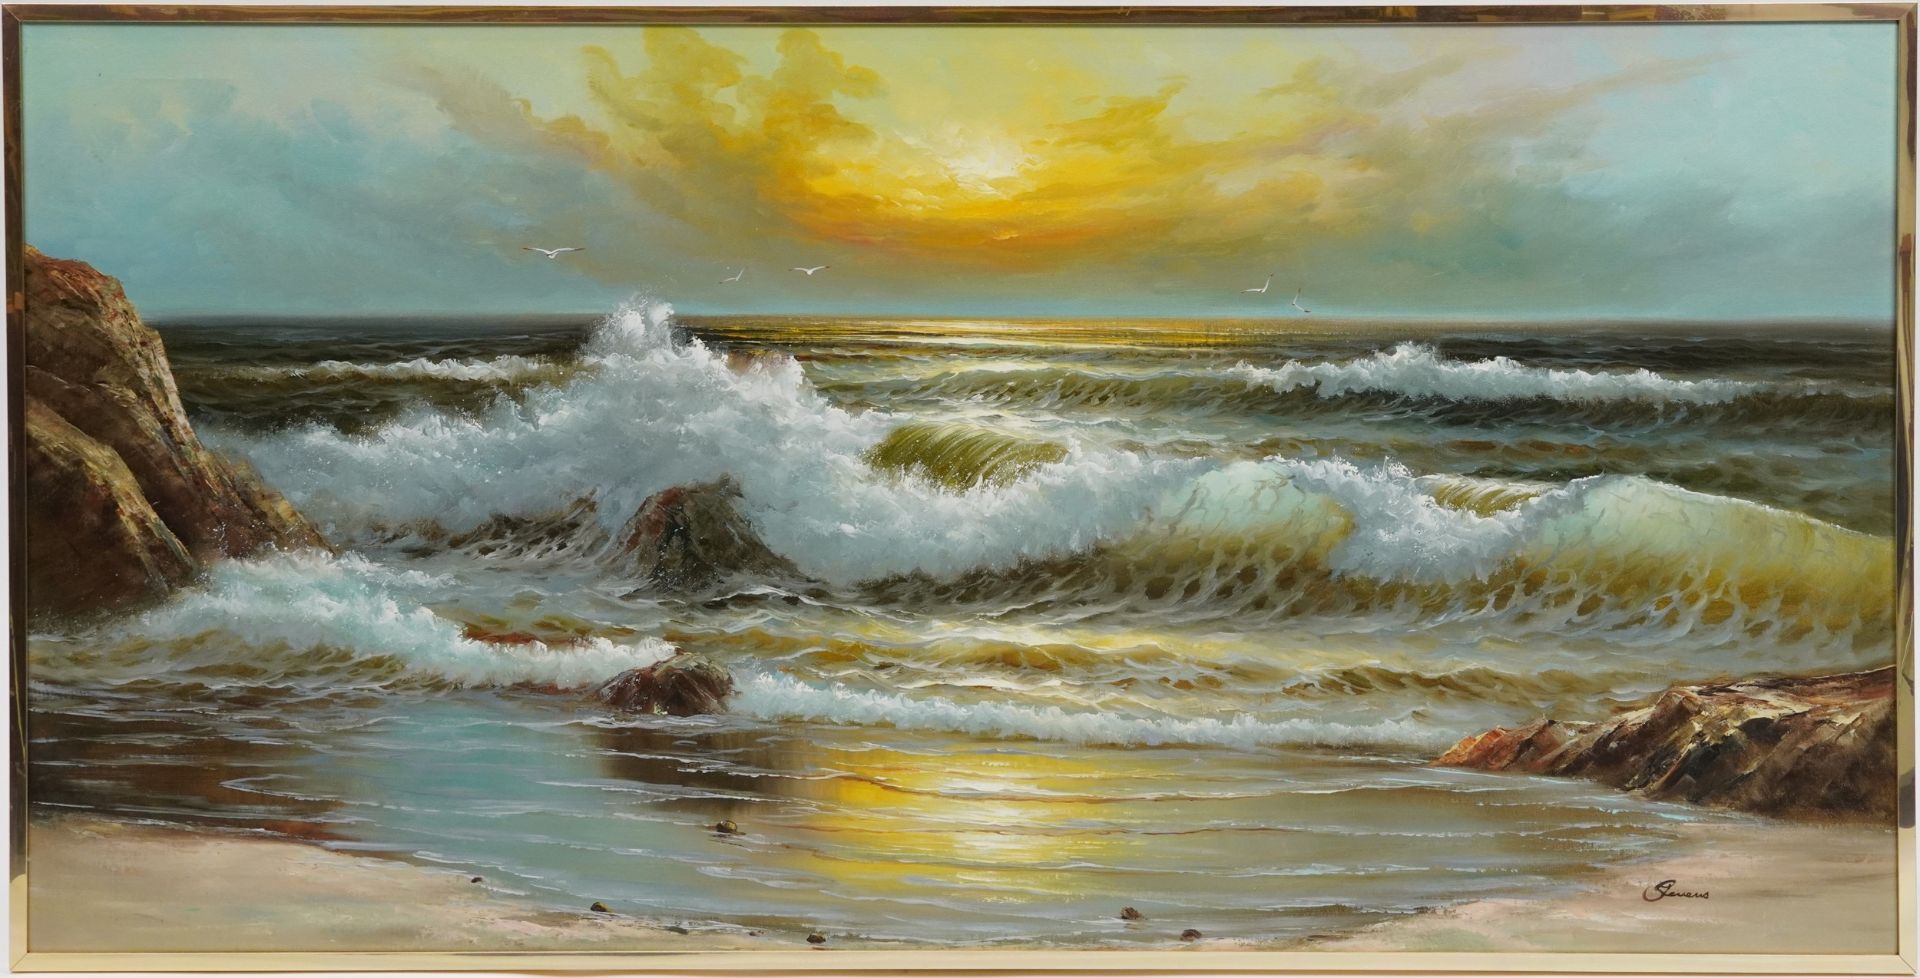 Coastal scene with crashing waves, oil on canvas, indistinctly signed, framed, 151cm x 75cm - Image 2 of 5